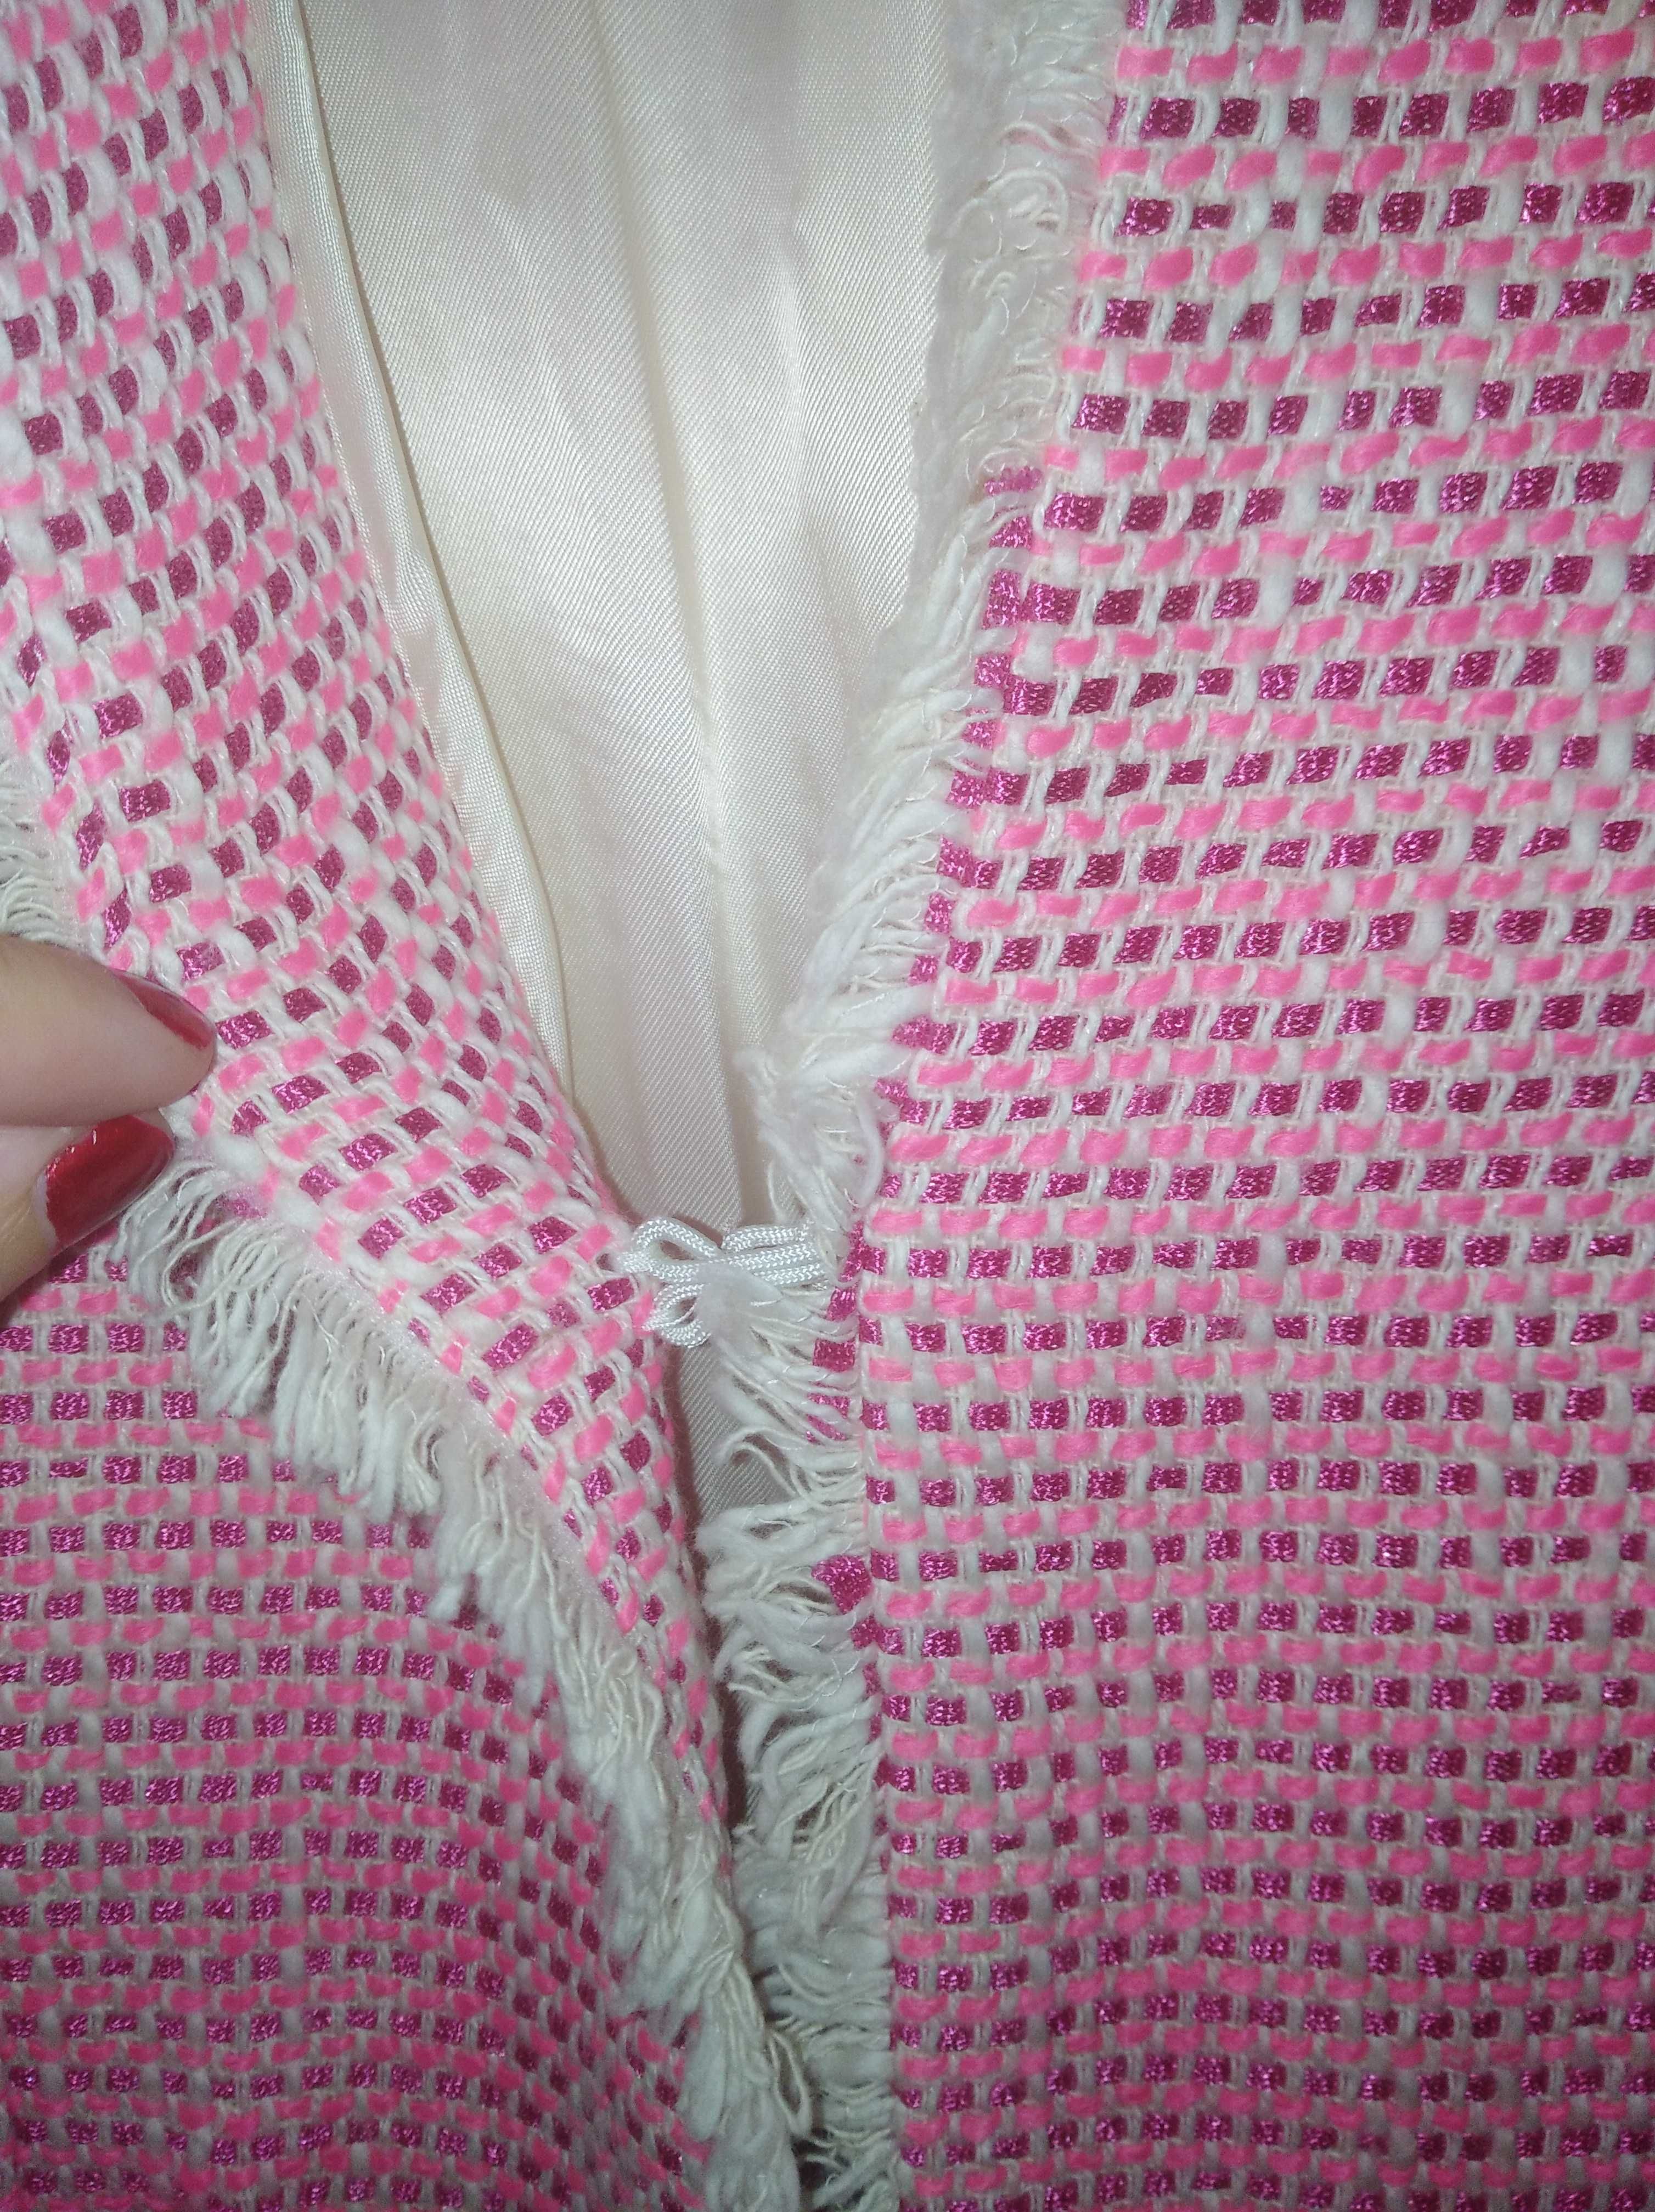 Casaco rosa tamanho 40 algodão LANIDOR